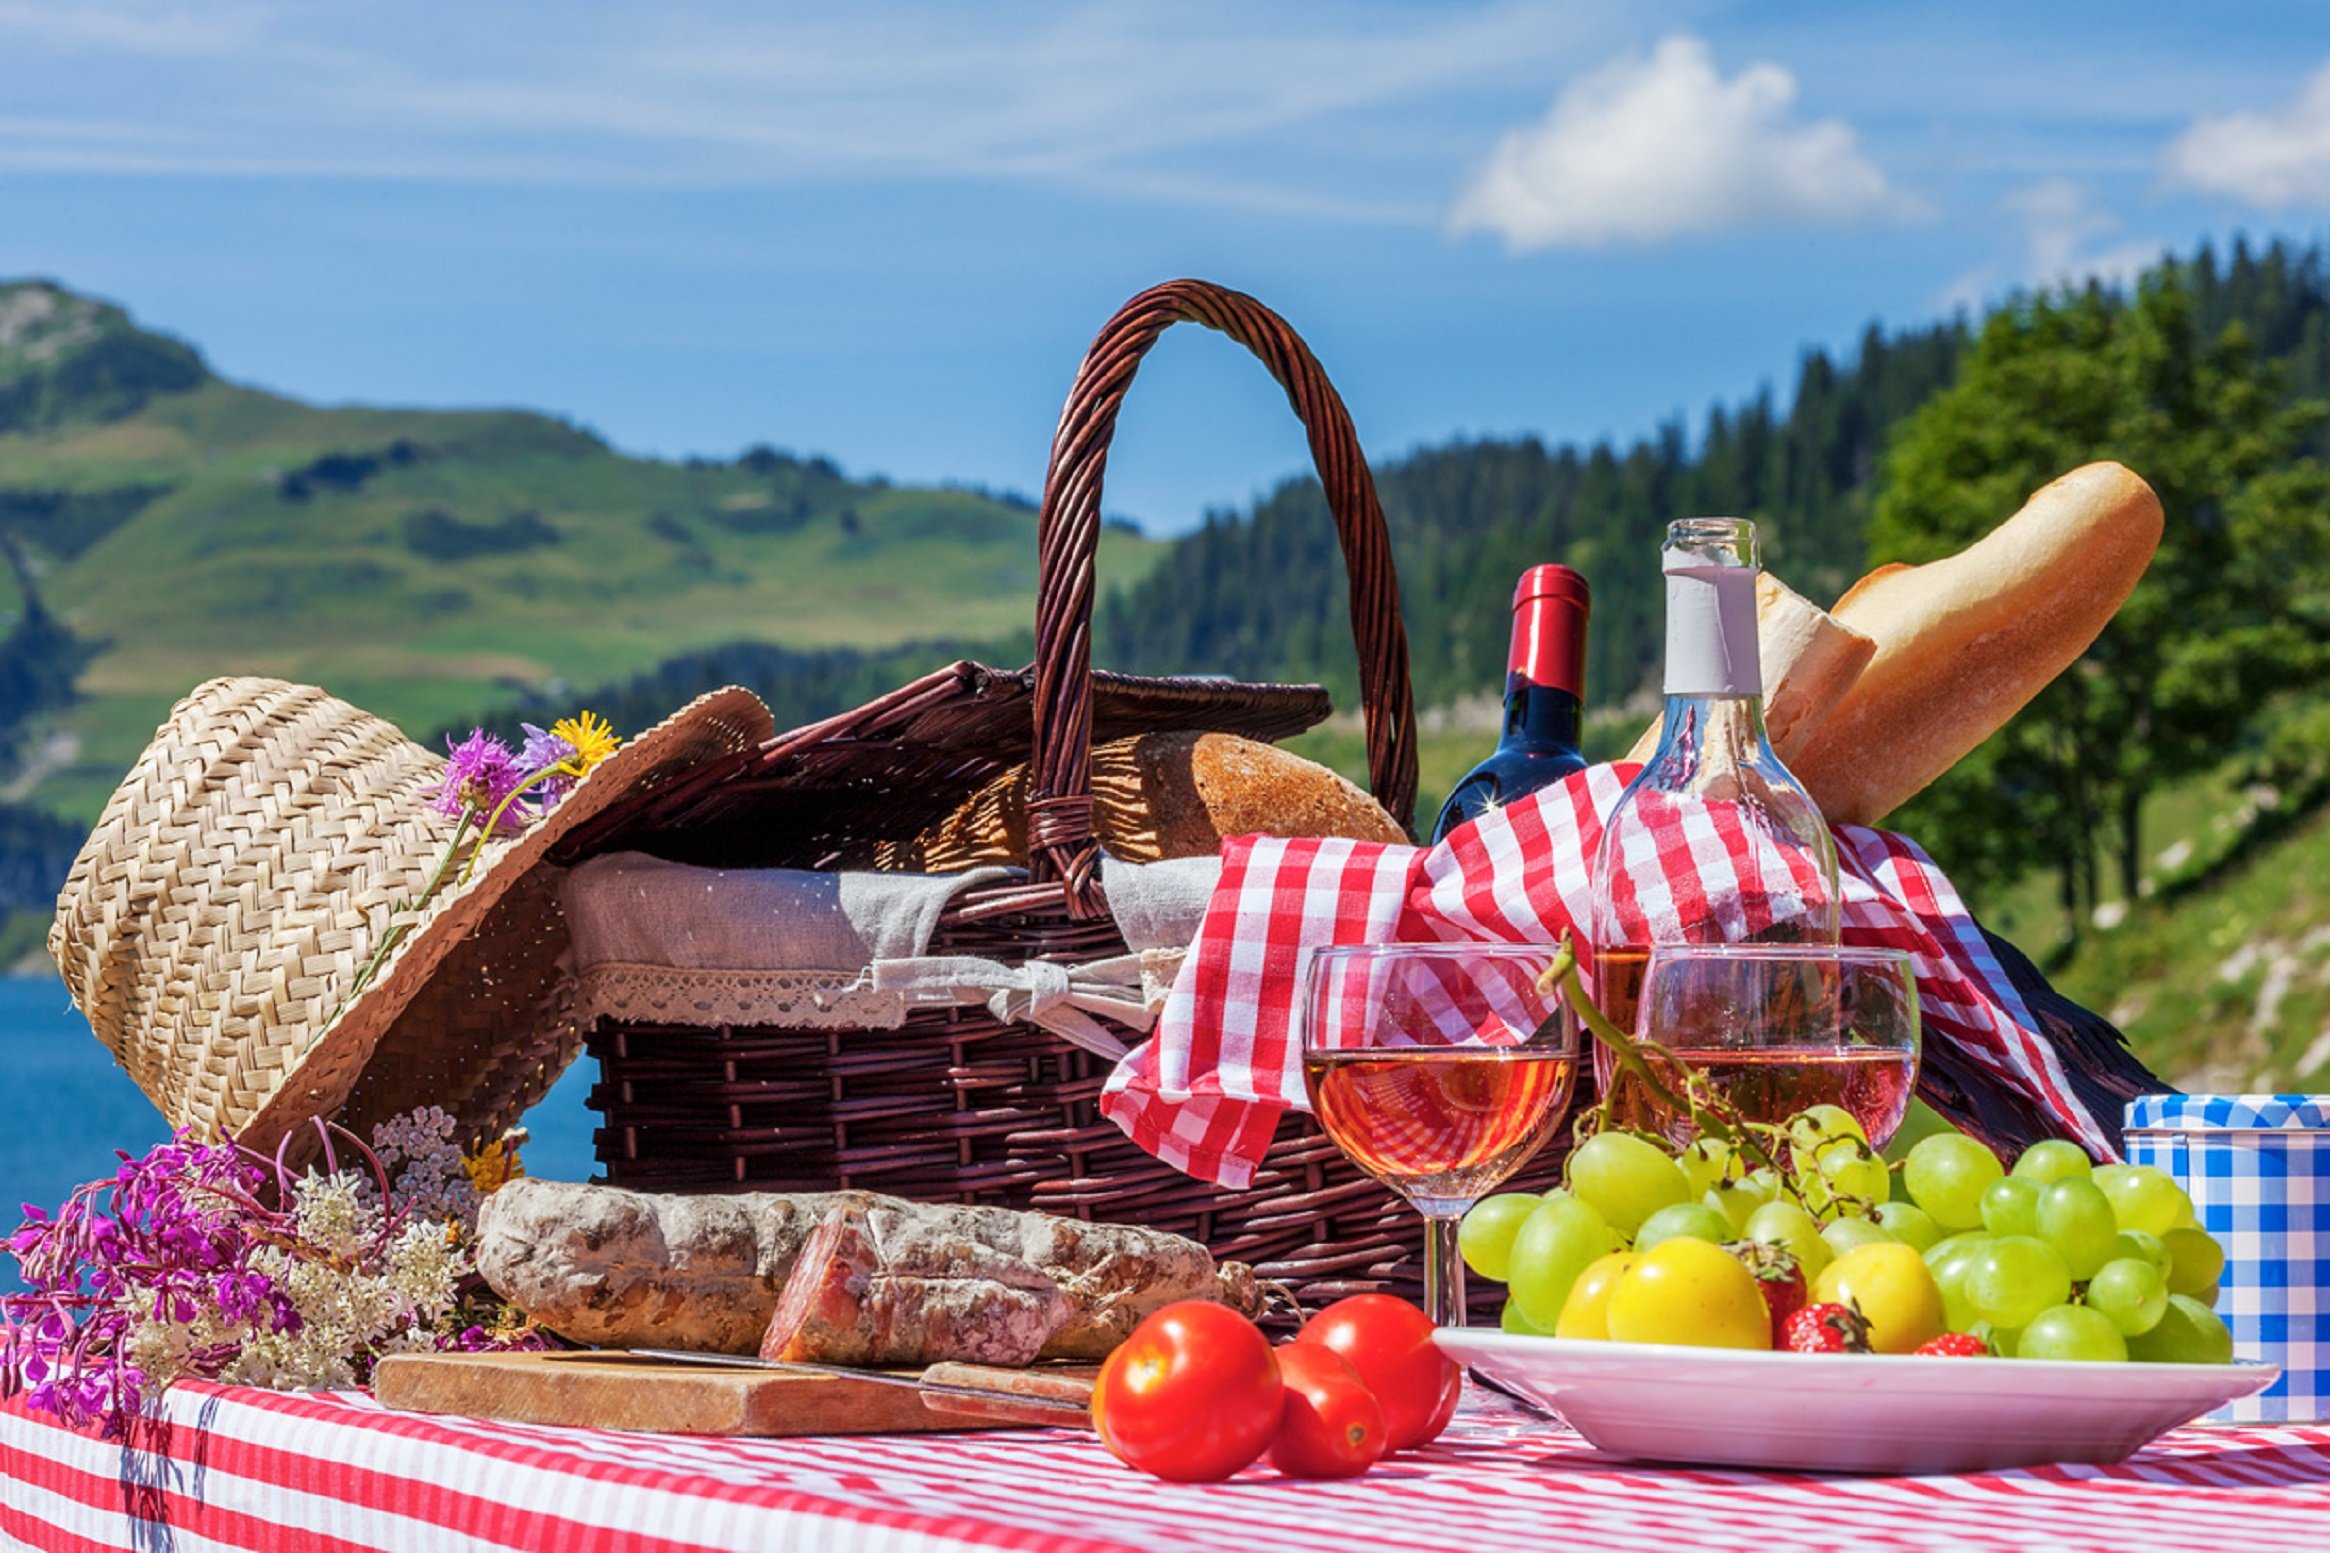 Los esenciales para un picnic los puedes encontrar en IKEA por menos de 20 euros